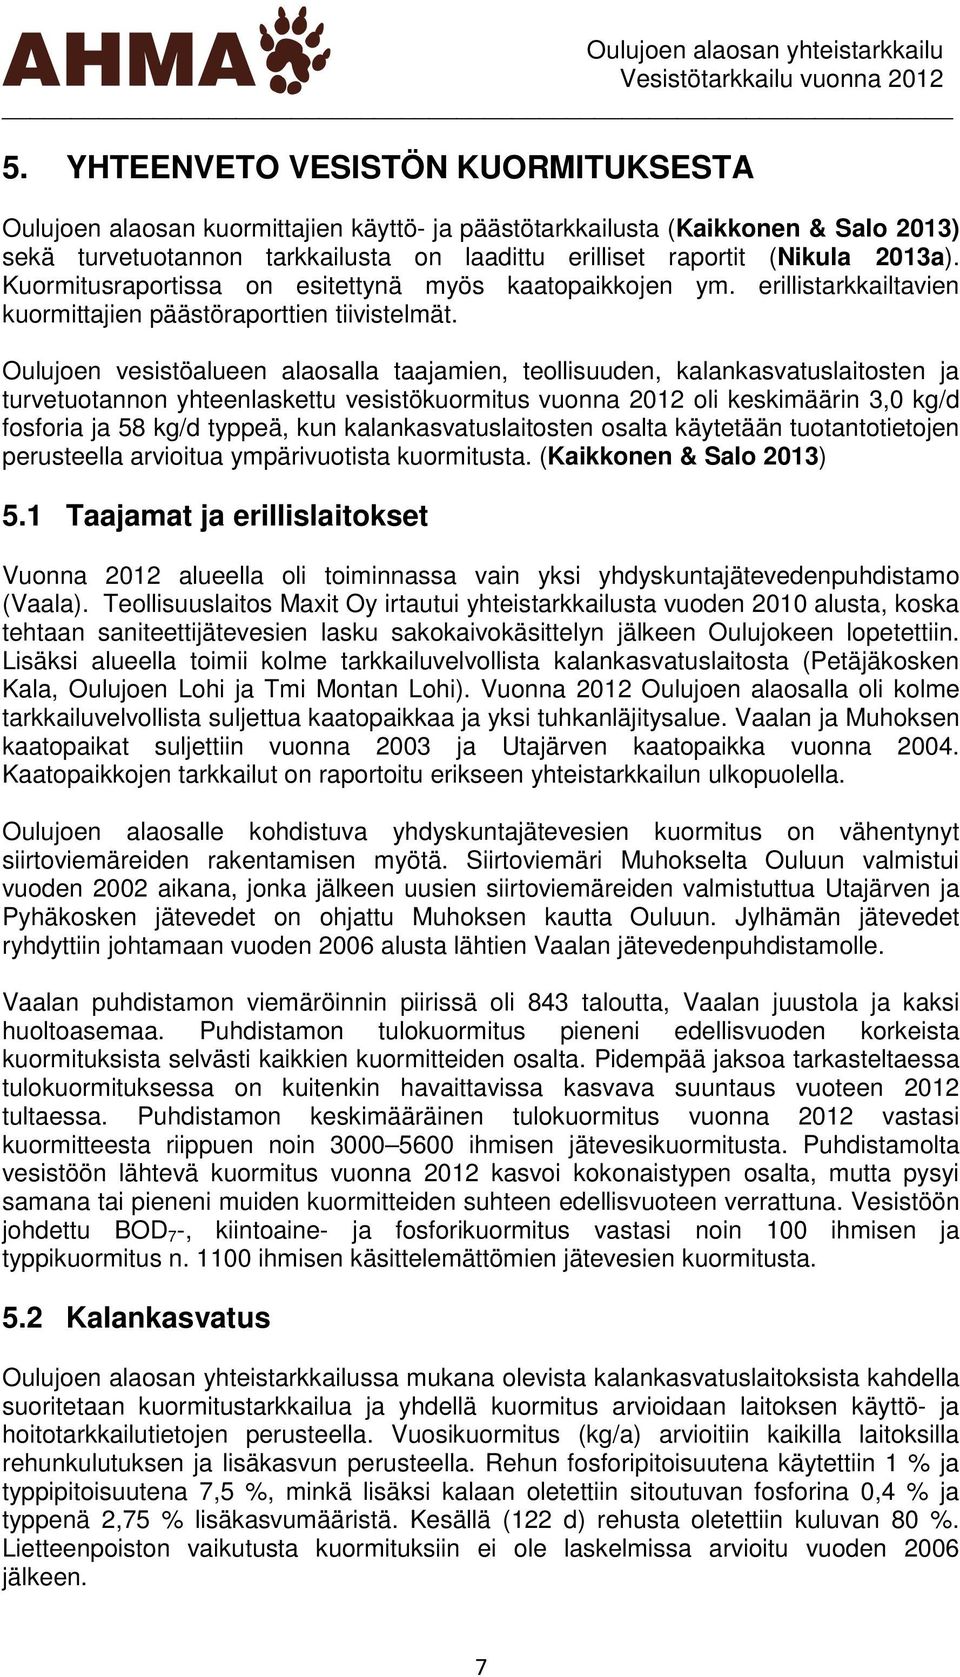 Oulujoen vesistöalueen alaosalla taajamien, teollisuuden, kalankasvatuslaitosten ja turvetuotannon yhteenlaskettu vesistökuormitus vuonna 212 oli keskimäärin 3, kg/d fosforia ja 58 kg/d typpeä, kun